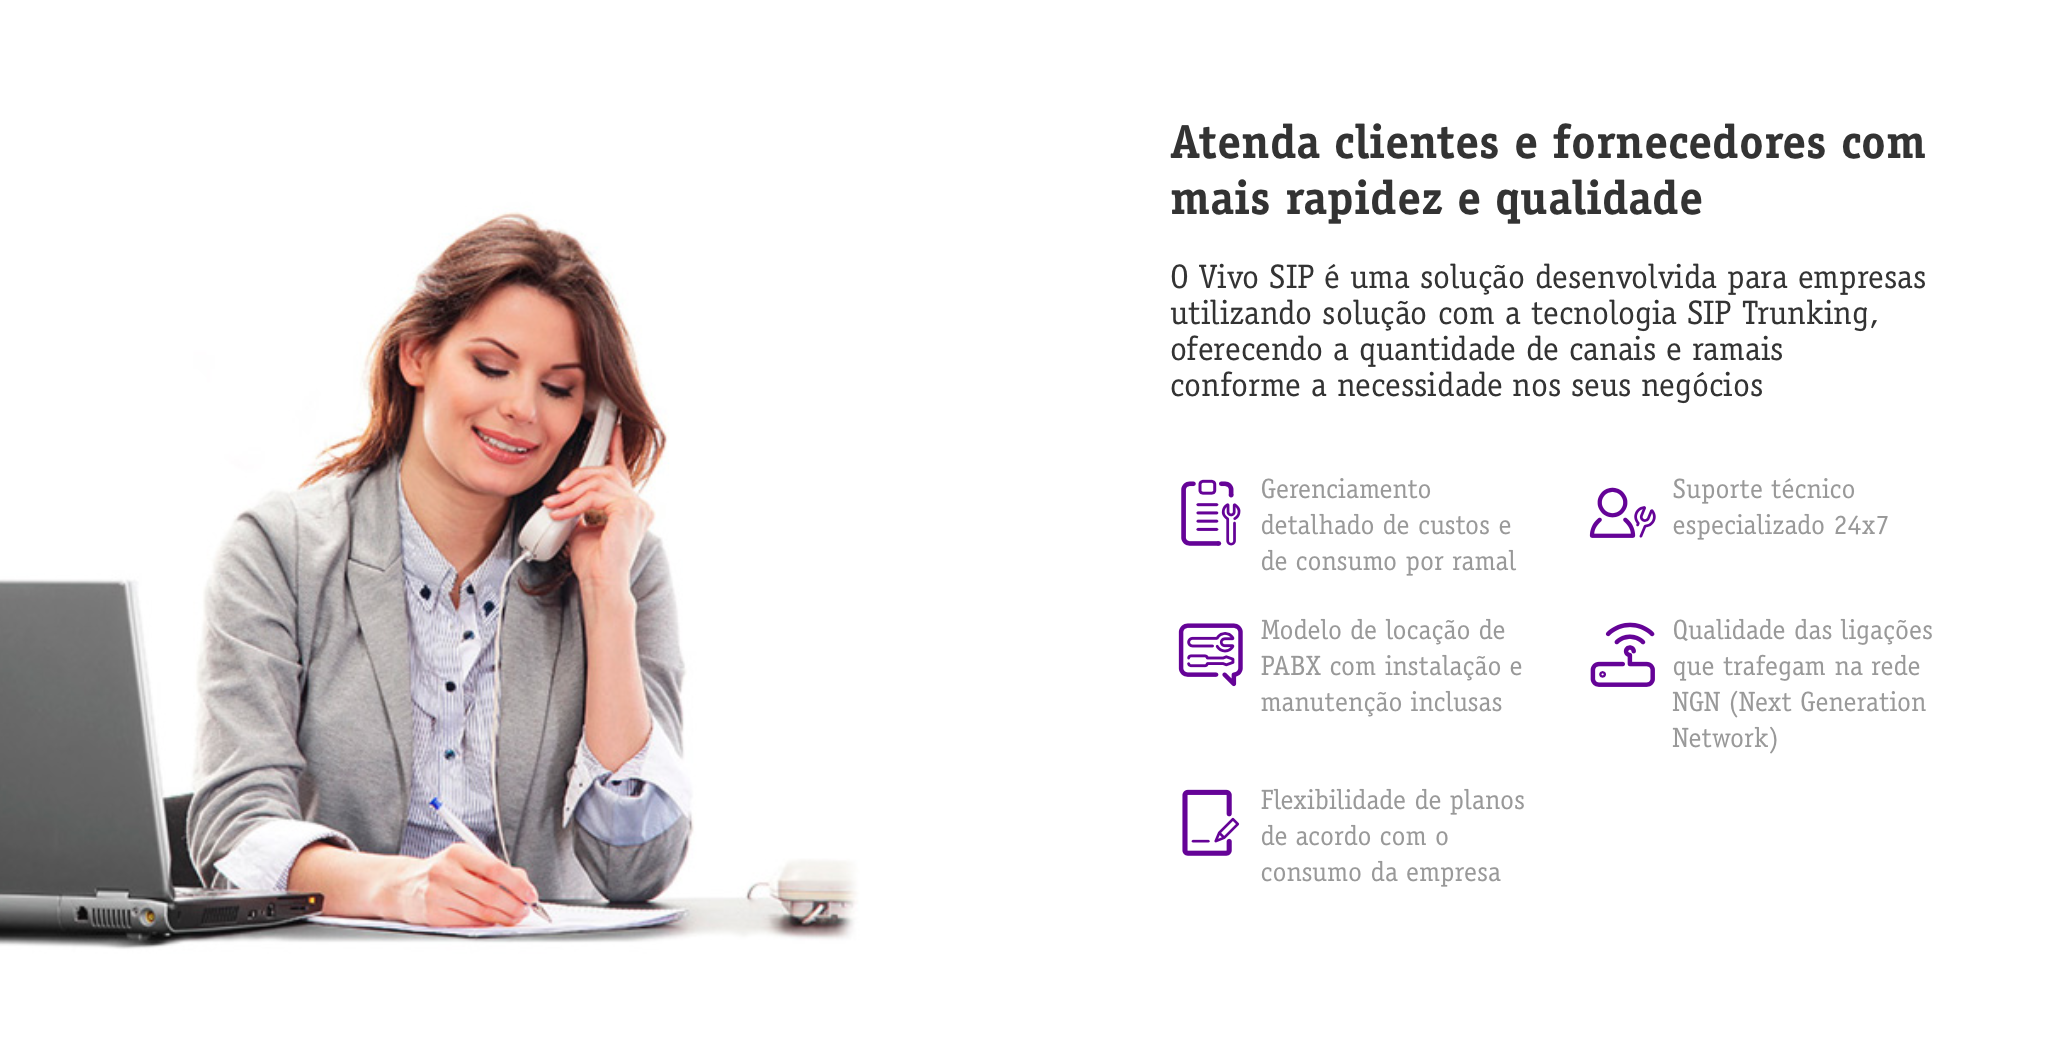 SIP: Mulher, à esquerda na foto, ao telefone e fazendo anotação. À direita na foto, lista de serviços da Vivo.